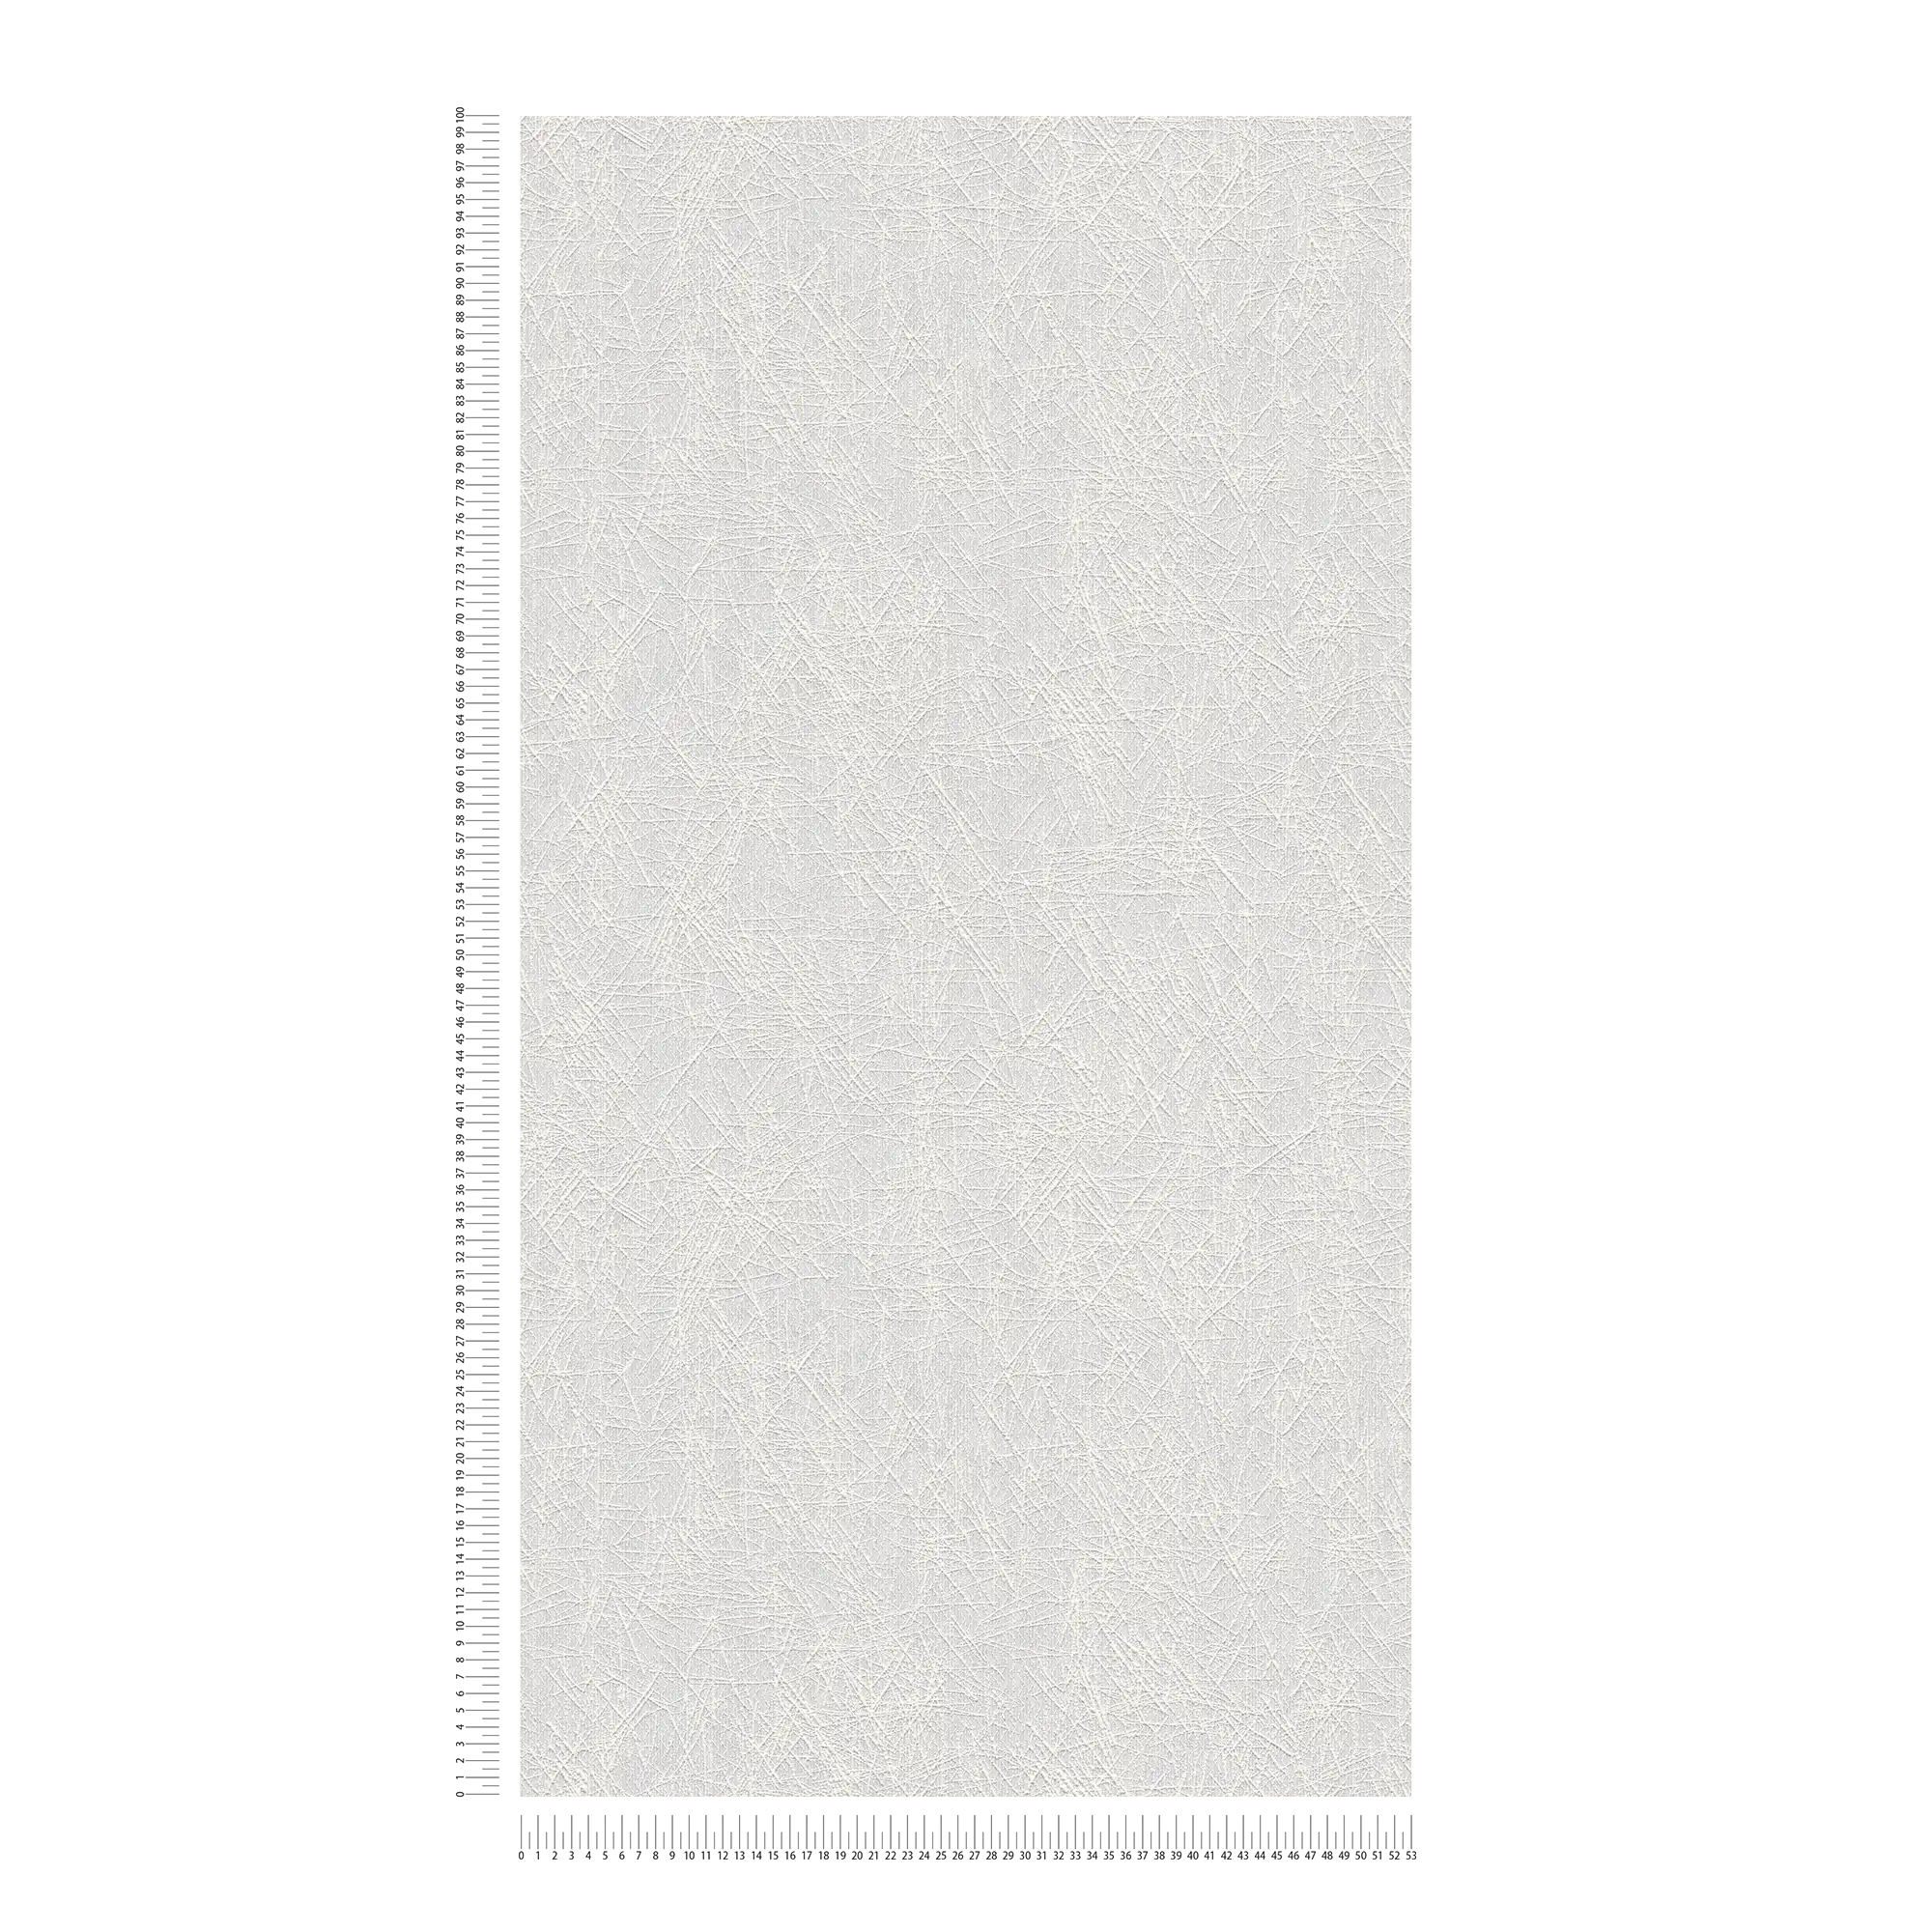             Overschilderbaar eenheidsbehang met grafisch lijnenspel - Overschilderbaar, Wit
        